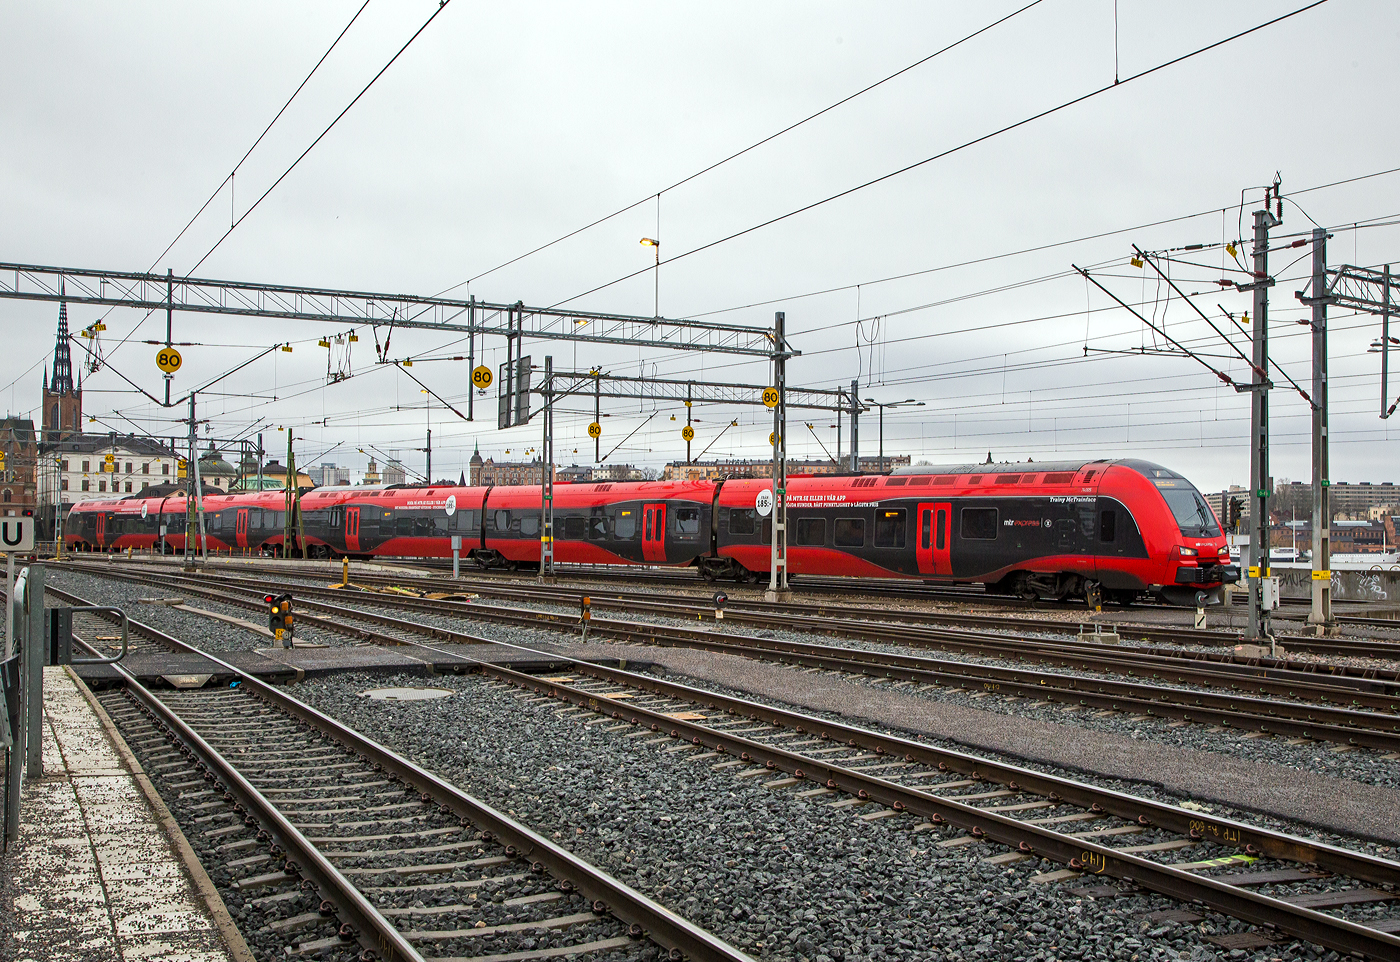 Der MTR Express X74 005, ein Stadler FLIRT 200, erreicht am 21.03.2019 Stockholm Central.

Die Baureihe MTR X74 ist ein Hochgeschwindigkeitszug, der vom Betreiber MTR Express seit März 2015 in Schweden, auf der Verbindung zwischen Stockholm und Göteborg eingesetzt wird. Die sechs beschafften Triebzüge wurden im November 2013 bei Stadler Rail in der Schweiz bestellt. Der FLIRT200 ist die Fernverkehrsausführung der FLIRT-Typenreihe. Mit der schnelleren Ausführung für den Intercity-Verkehr hat Stadler die Palette der FLIRT-Typenreihe erfolgreich erweitert.

Die Züge wurden von Stadler Rail mit einer maximalen Leistung von 4.500 kW und einer Höchstgeschwindigkeit von 200 km/h gebaut. Das Fahrzeug ist eine Version des Stadler-FLIRT-Modells, das an die norwegischen Norges Statsbaner (NSB) als NSB Type 74 und NSB Type 75 geliefert wurde. Er entspricht weitgehend den gleichen technischen Spezifikationen, jedoch mit unterschiedlicher Ausstattung. Die Züge sind so konzipiert, dass sie dem Klima in den Schweizer Alpen und im Norden standhalten.

Ein Zug besteht aus insgesamt fünf Wagen ohne Neigetechnik mit Mittelgang. Er besitzt Jakobs-Drehgestelle. Bei Bedarf können mehrere Züge gekuppelt werden.

Die Garnituren mit 2+2-Bestuhlung besitzen einen Kiosk, Steckdosen an allen Sitzplätzen, WLAN-Anschluss, behindertengerechte Einstiege und sind klimatisiert. Es gibt nur eine Wagenklasse. Der Durchgang durch den Zug ist nicht barrierefrei, da zwischen den Wagen Stufen vorhanden sind. Problematisch gestaltet sich teilweise der Weg zu den Toiletten, da von verschiedenen Sitzplätzen aus der beidseitig am Mittelgang angeordnete Kiosk durchquert werden muss. Jeder Wagen besitzt eine Doppelschiebetüre für den Fahrgastwechsel mit ausfahrbaren Trittstufen.

Innendetails sind unter anderem Wanduhren von Swiss Breitling und verstellbare Leselampen, die an den Sitzen montiert sind. Der Innenraum einschließlich der verstellbaren Sitze ist in grauer Farbe gehalten, einige Sitze haben eine rote Rückenlehne.

TECHNISCHE DATEN:
Spurweite:  1.435 mm (Normalspur)
Achsformel: Bo’2’2’Bo’+2’2’Bo’
Länge über Kupplung: 105.500 mm
Breite: 3.200 mm
Höhe: 4.380 mm
Achsabstand im Antriebsdrehgestell: 2.500 mm
Achsabstand im Laufdrehgestell: 2.750 mm
Treib- und Laufraddurchmesser: 920 mm (neu)
Dienstgewicht: 216 t
Höchstgeschwindigkeit: 200 km/h
Leistung: 4.500 kW
Anfahrzugkraft: 240 kN
Stromsystem: 15 kV 16,7 Hz ~
Sitzplätze:  244
Fußbodenhöhe: 800 mm (Niederflur) / 1.180 mm (Hochflur)

Quelle: Stadler Rail